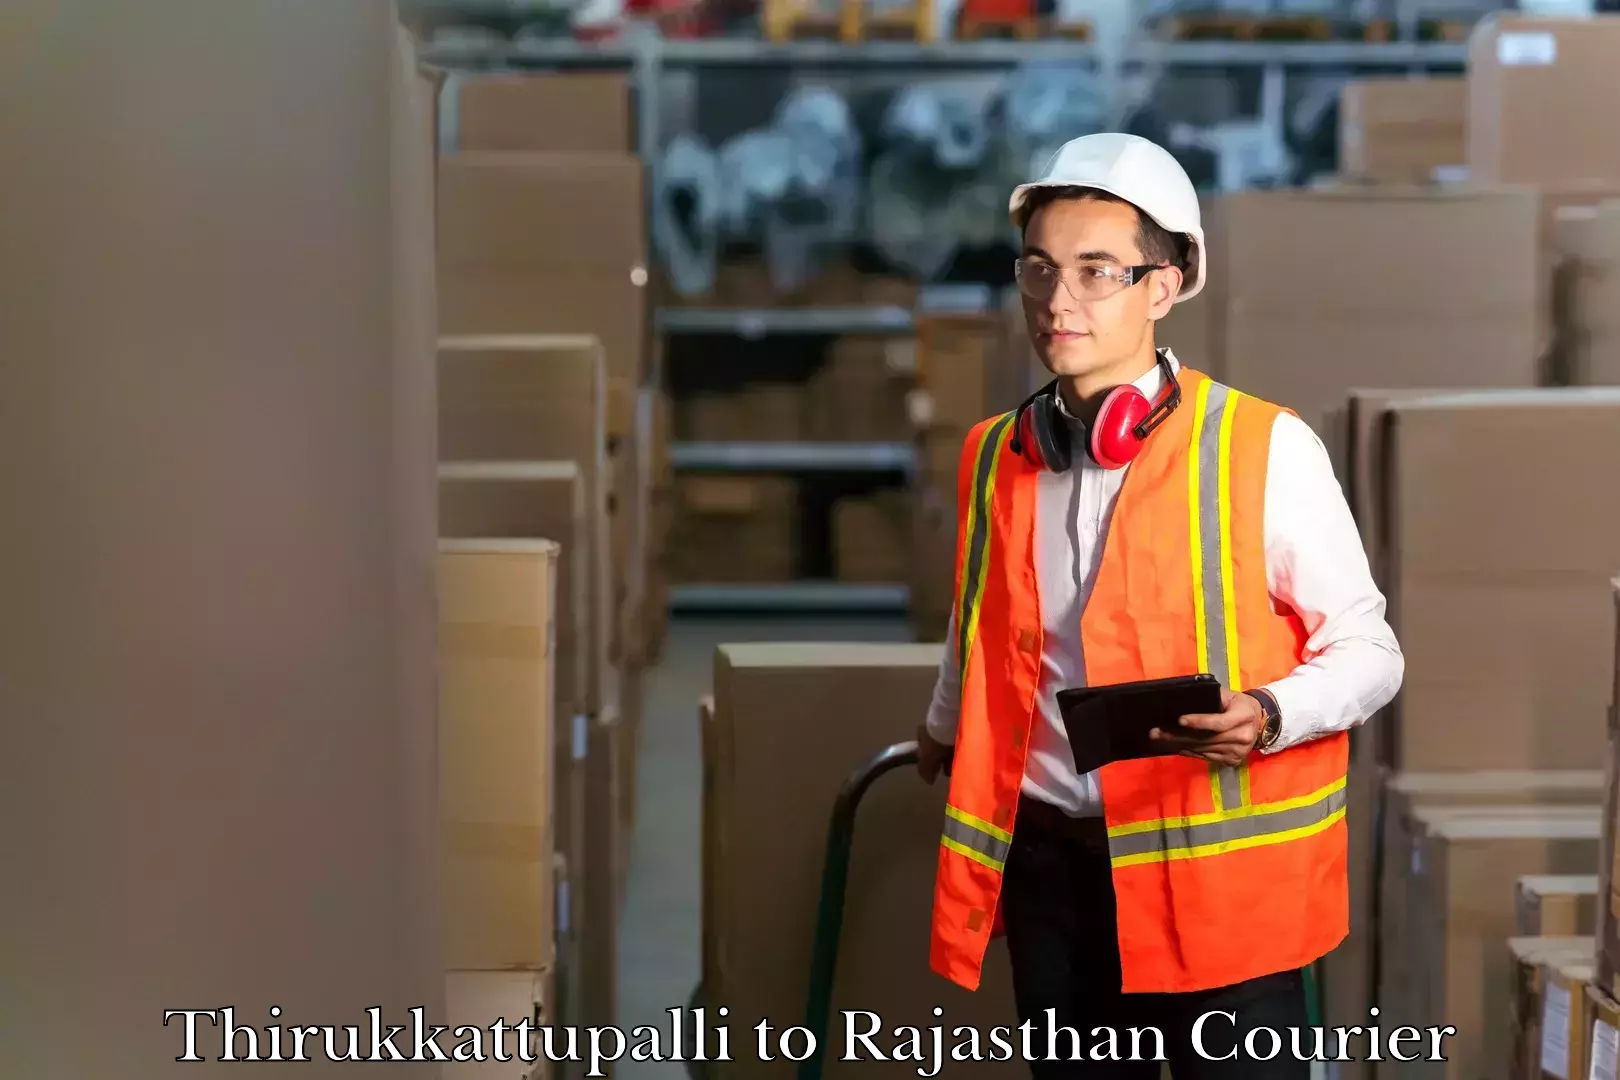 Baggage shipping optimization Thirukkattupalli to Rajasthan